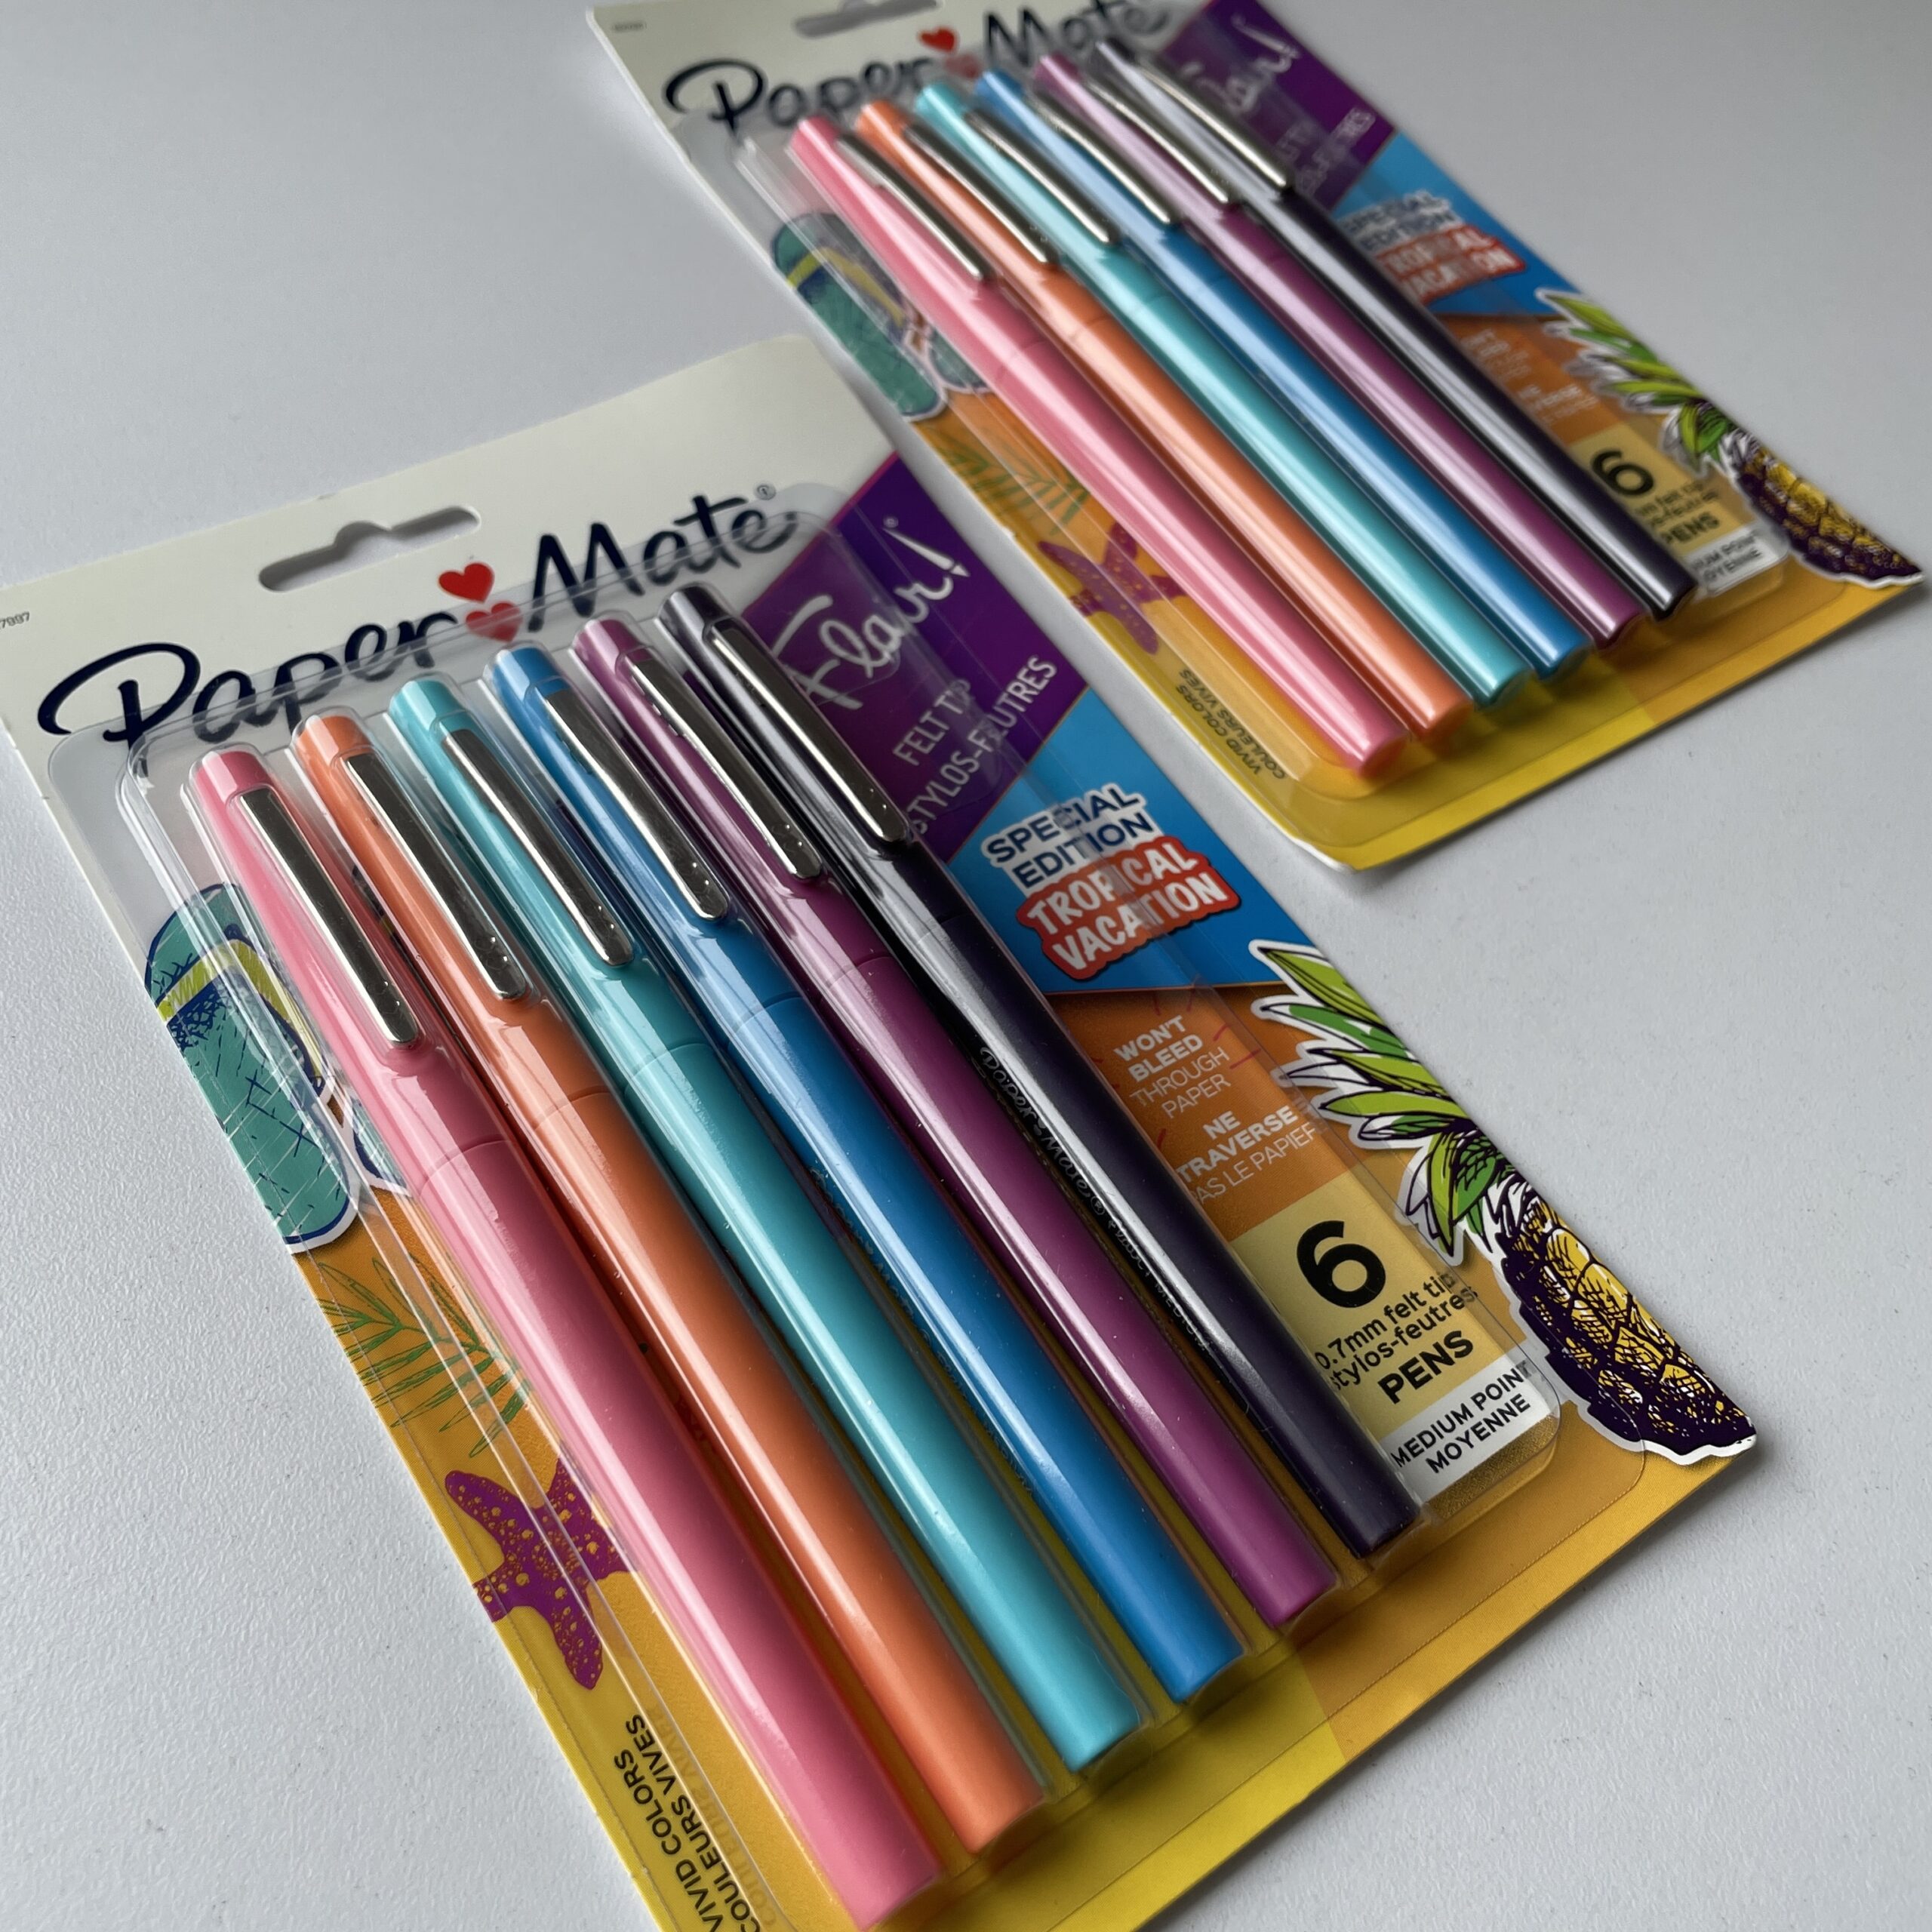 Boligrafo paper mate flair tropical bolsa 24 colores surt - Librería  Amarilla